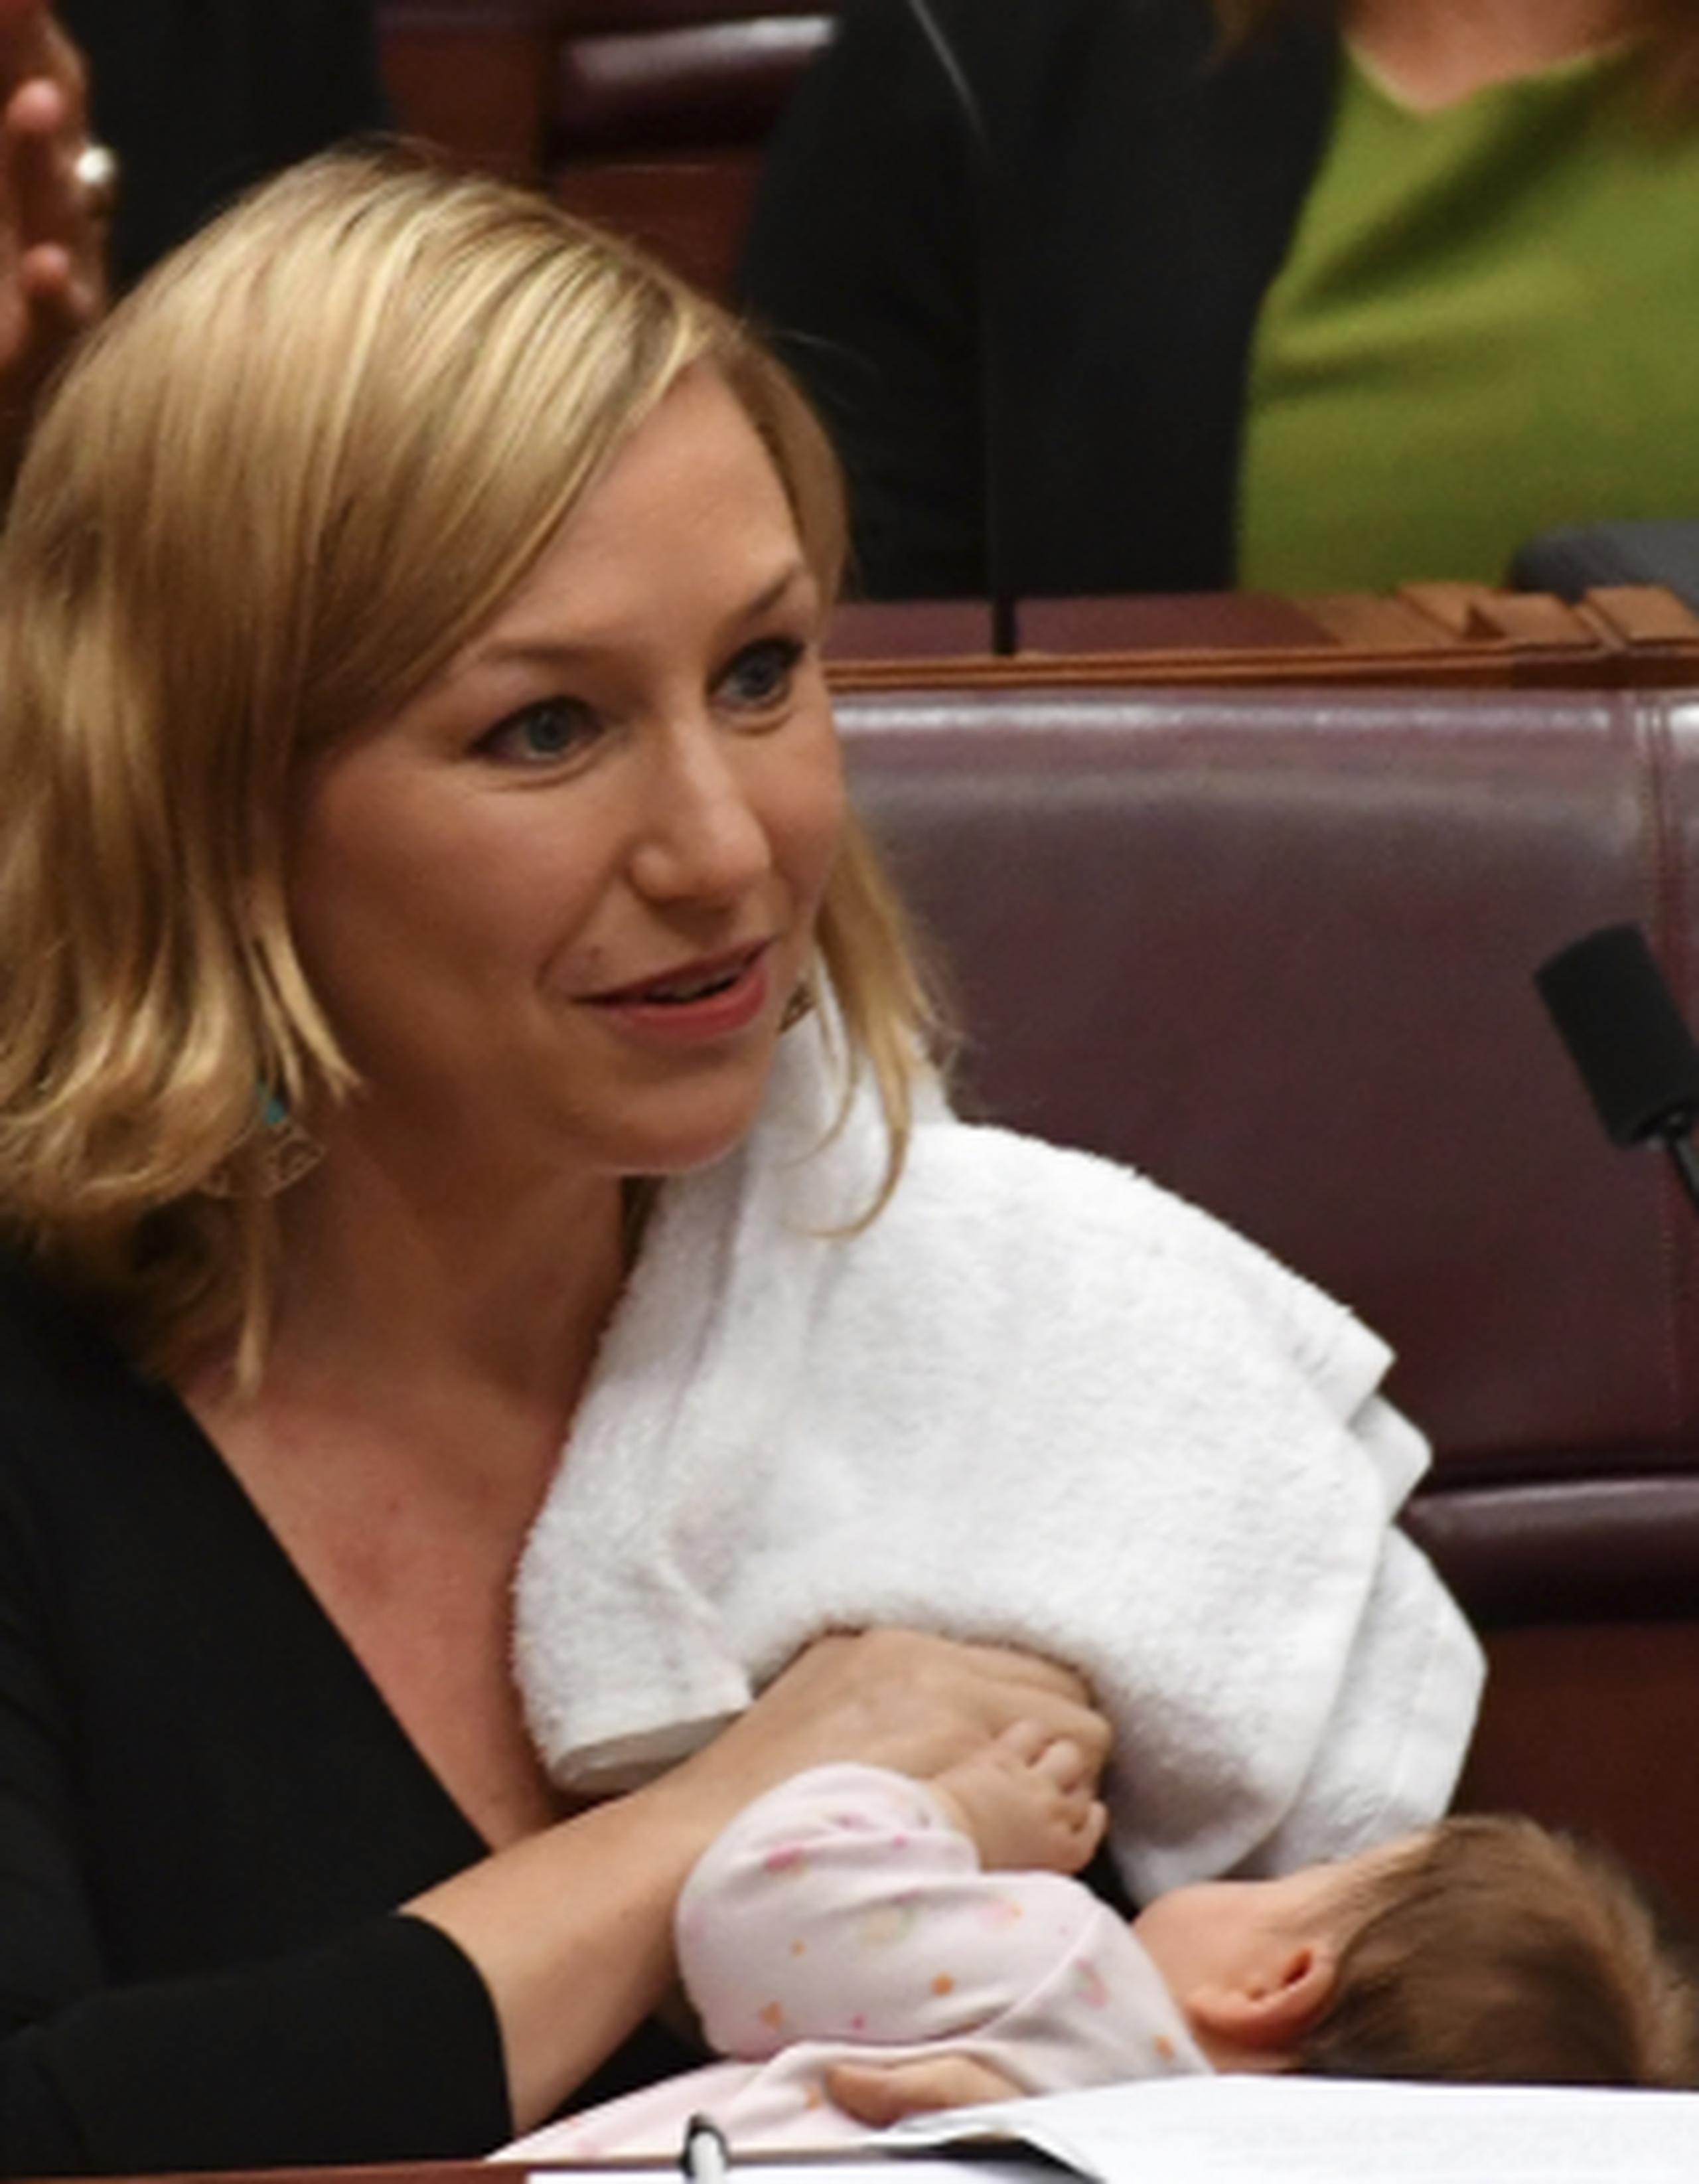 La senadora australiana Larissa Waters amamanta a su bebé Alia Joy durante una sesión en el Senado, en Canberra, la capital de Australia. (Mick Tsikas/AAP Image via AP)
